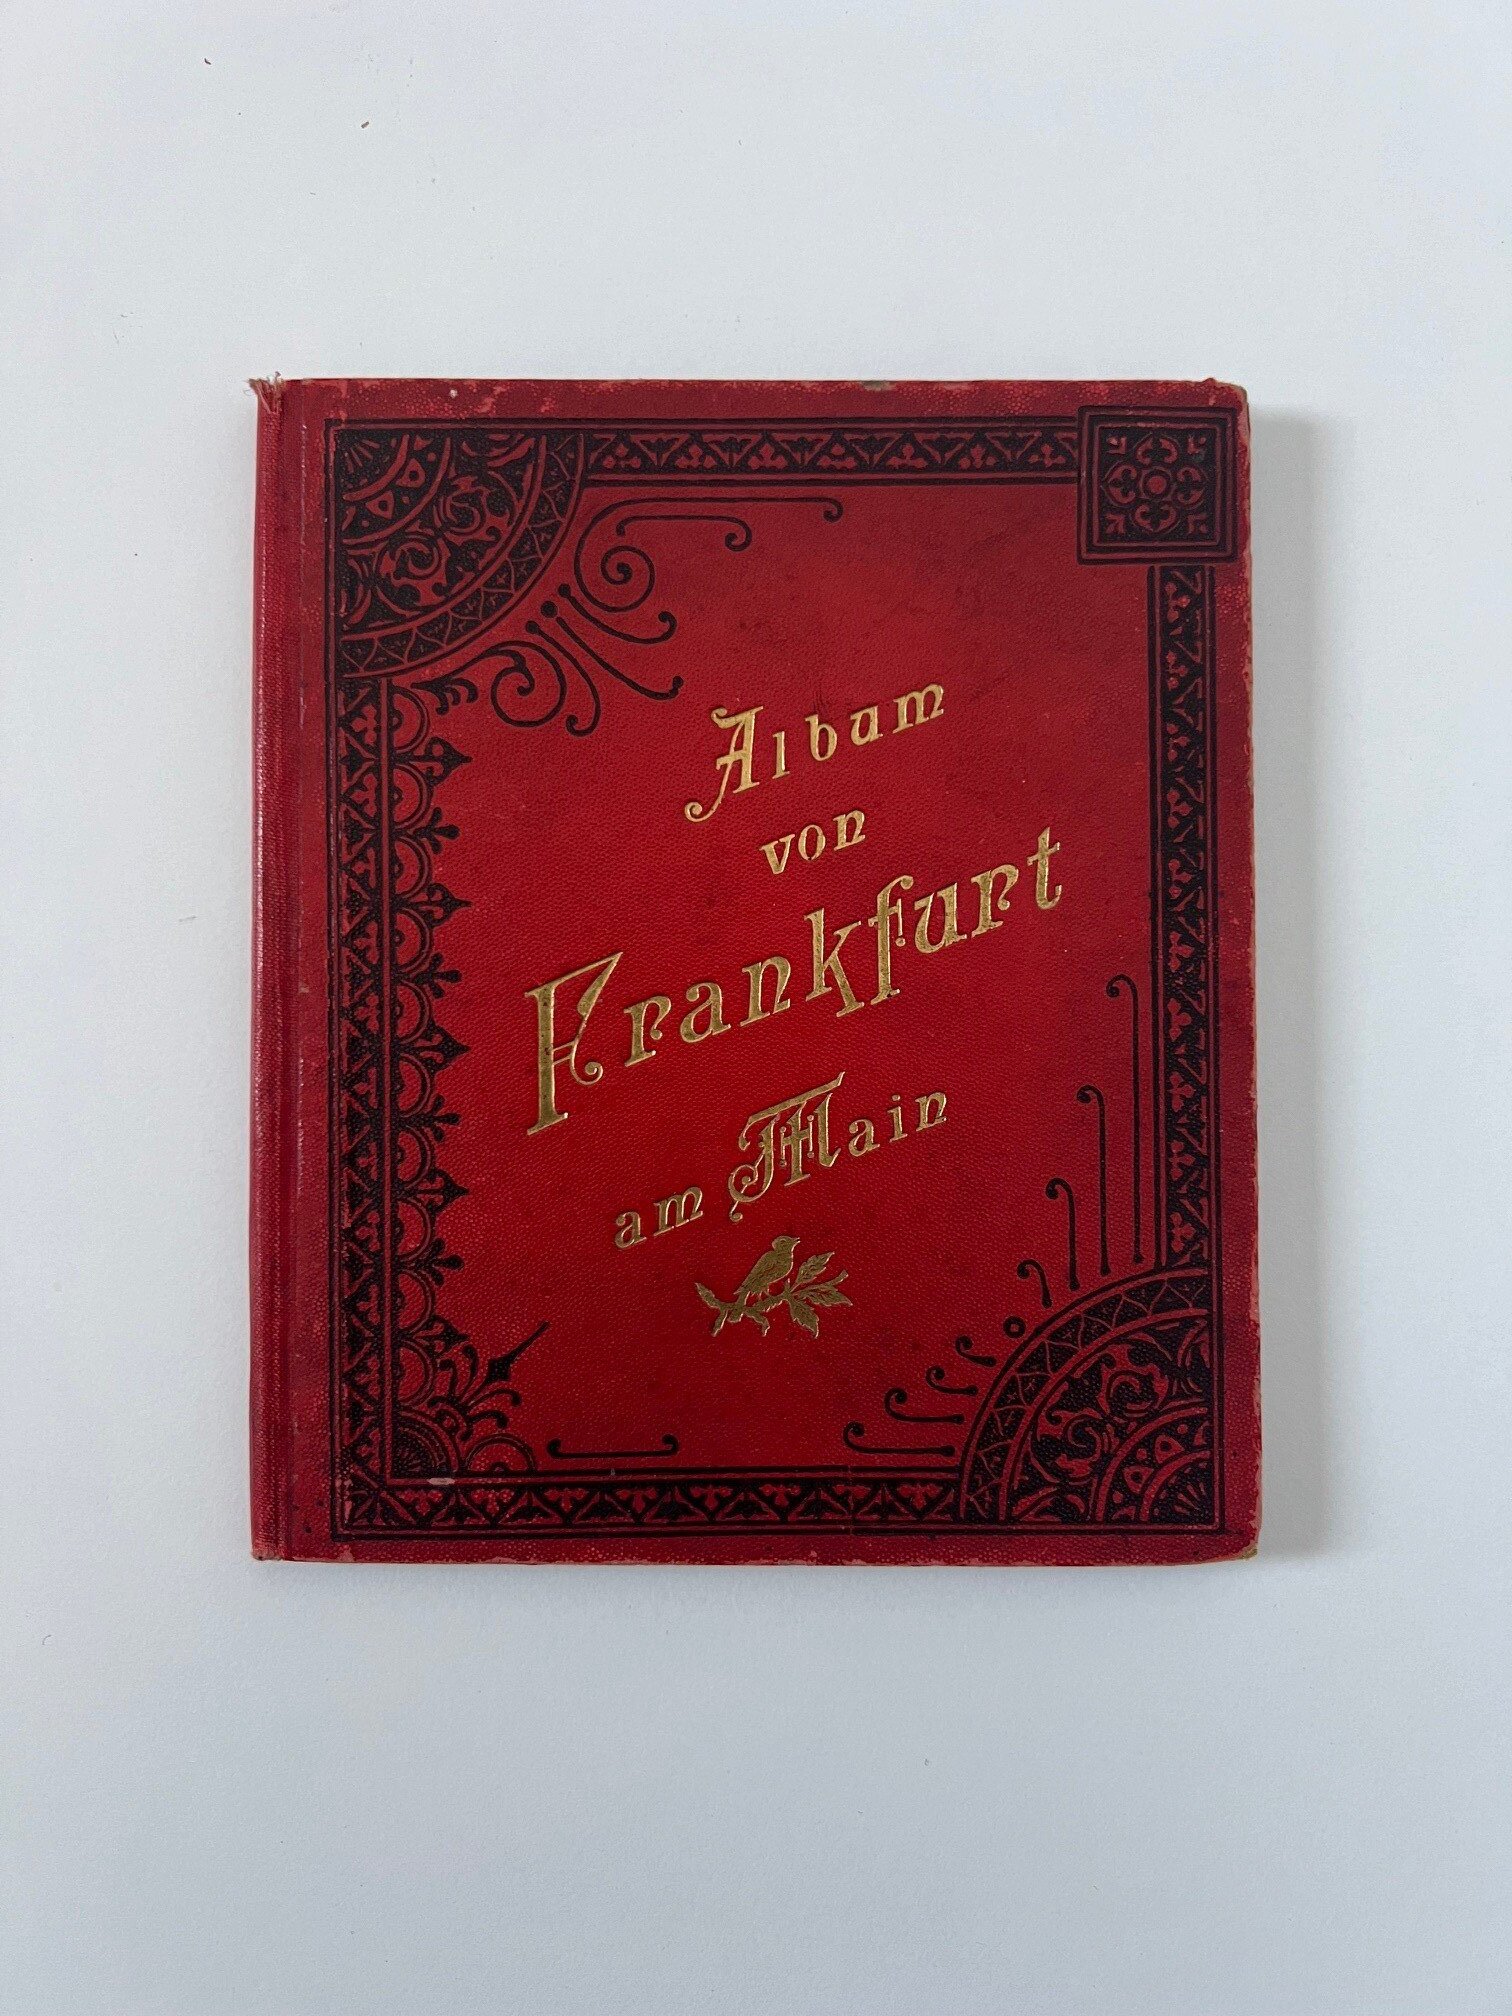 Verlag Gerhard Blümlein & Co, Album von Frankfurt am Main, 30 Lithographien als Leporello, ca. 1902. (Taunus-Rhein-Main - Regionalgeschichtliche Sammlung Dr. Stefan Naas CC BY-NC-SA)